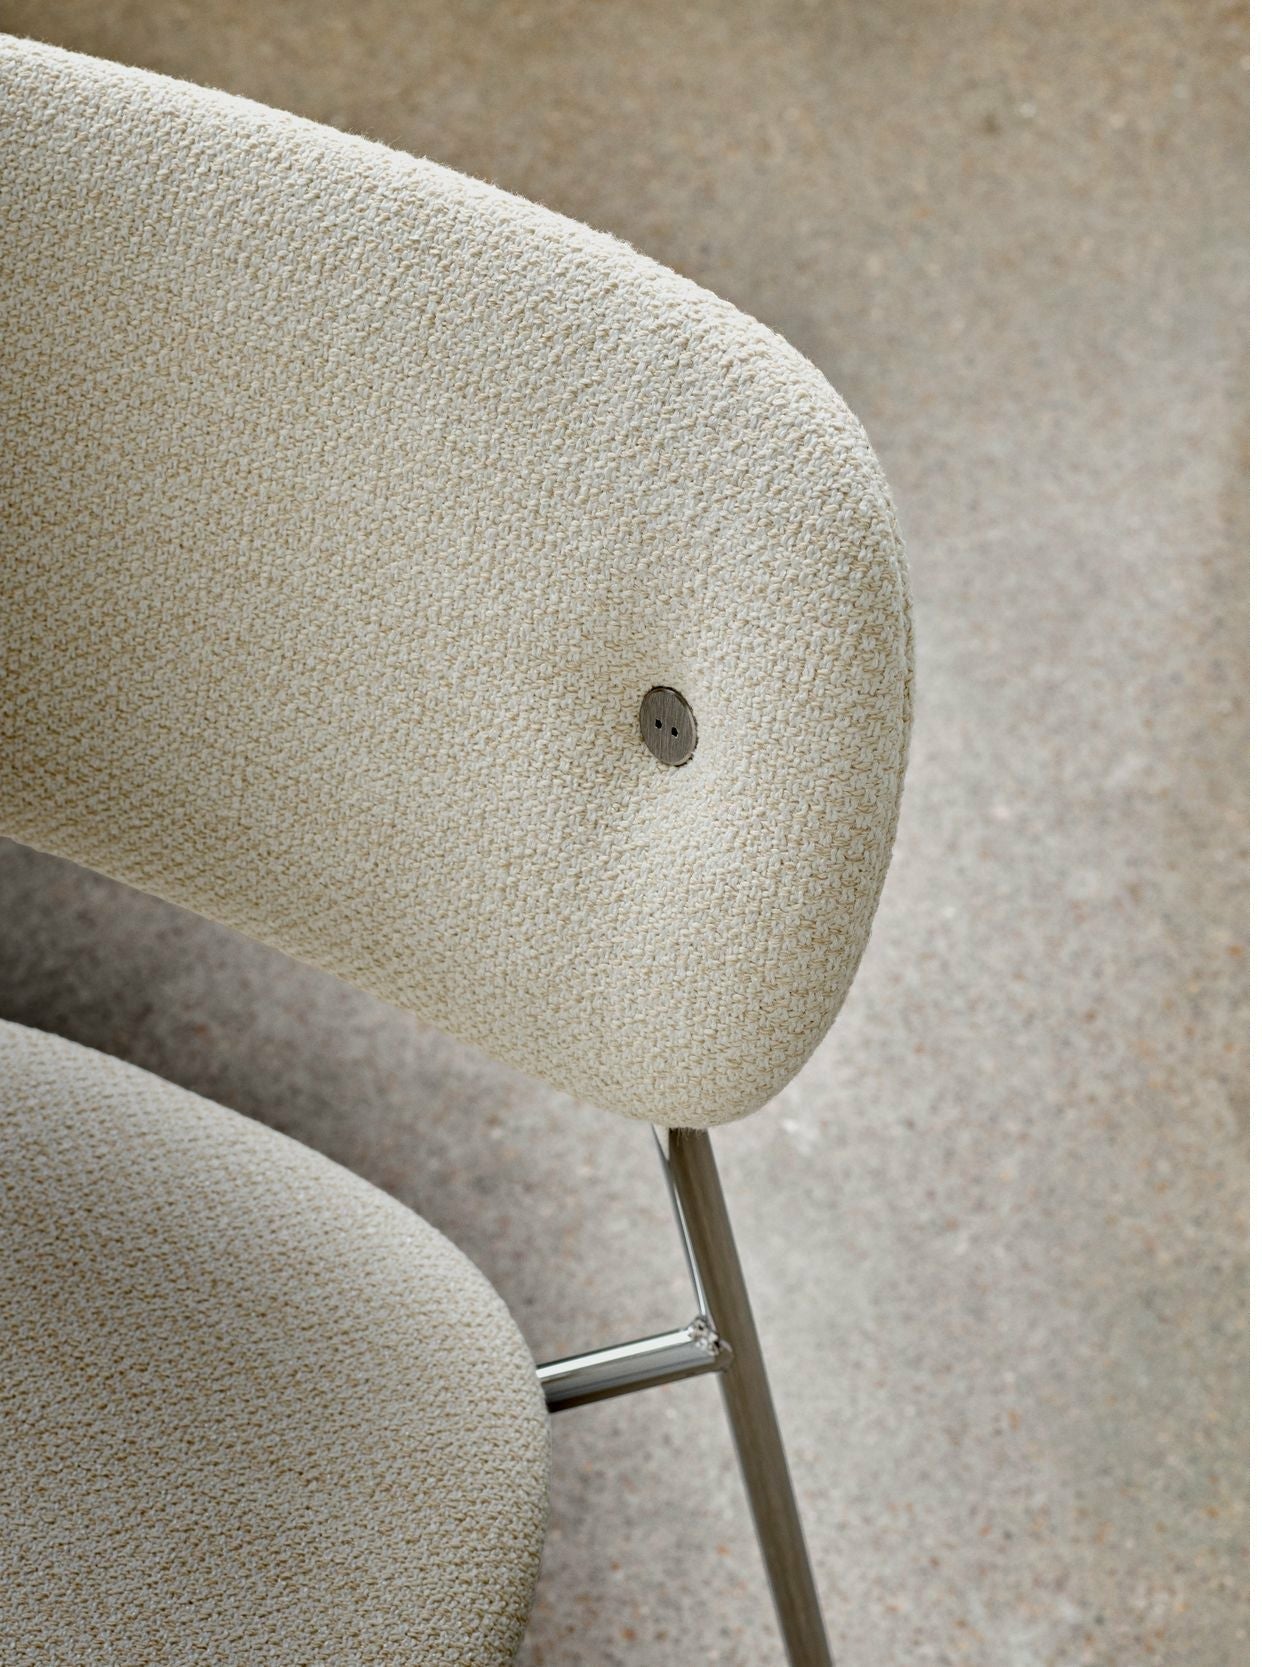 Audo Copenhagen Co silla tapicería completa con roble negro del reposabrazos, Chrome/Doppiopanama T14012/001